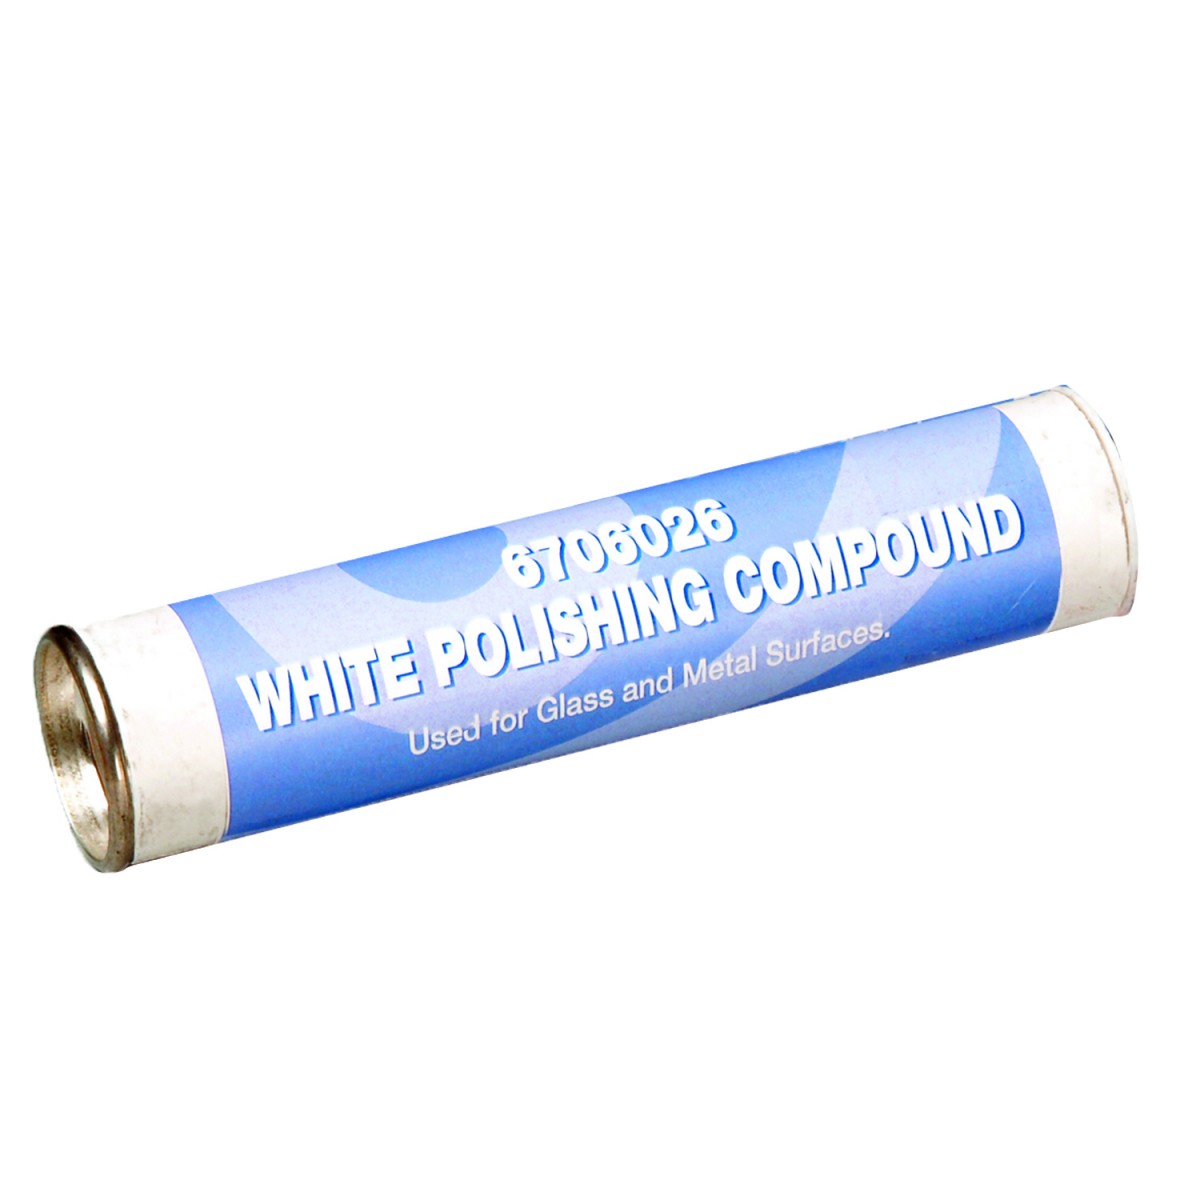 White Rouge Polishing Compound